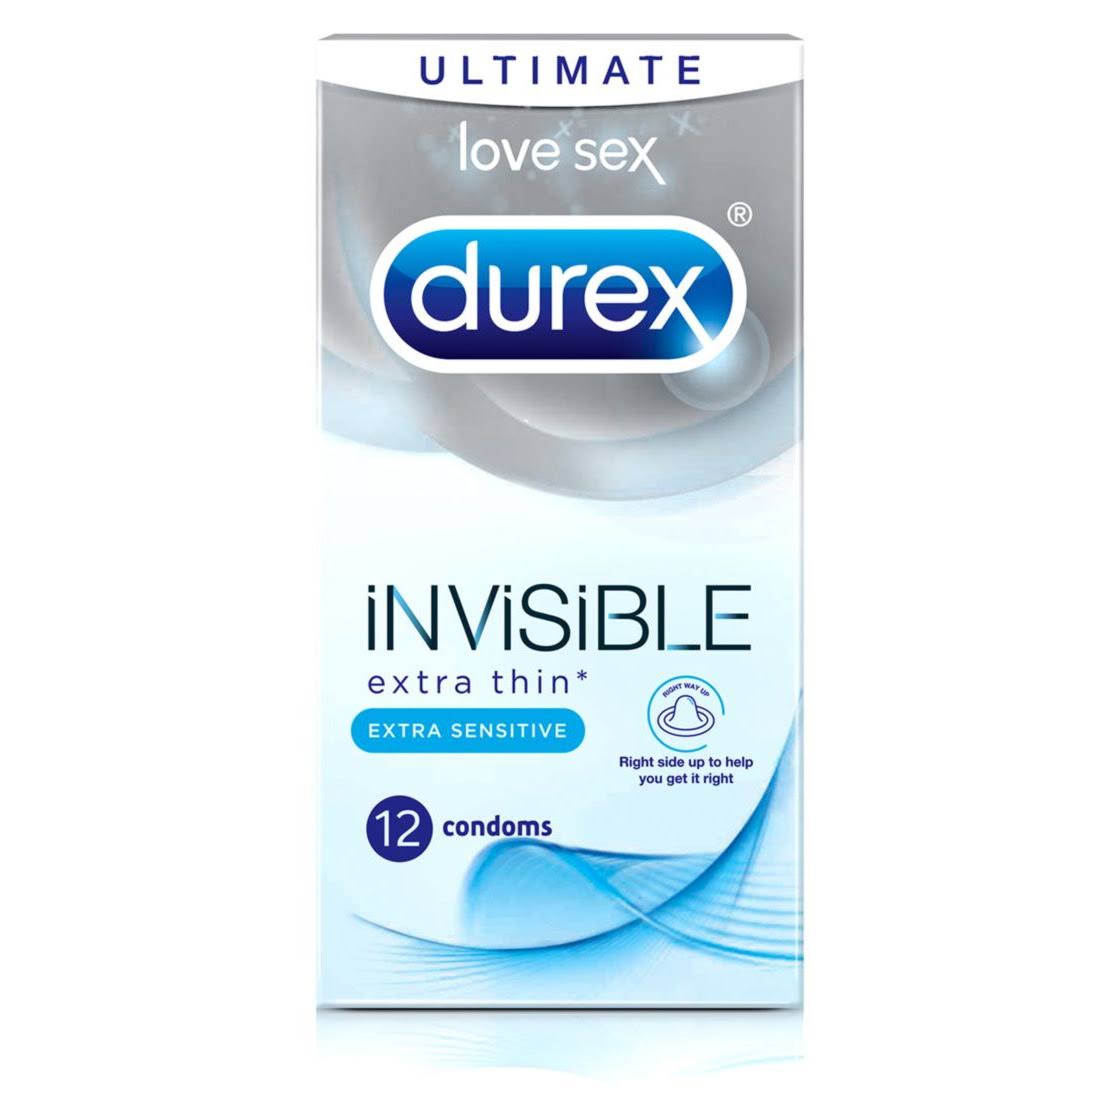 Durex Invisible Extra Sensitive Condoms Packs - 12pck